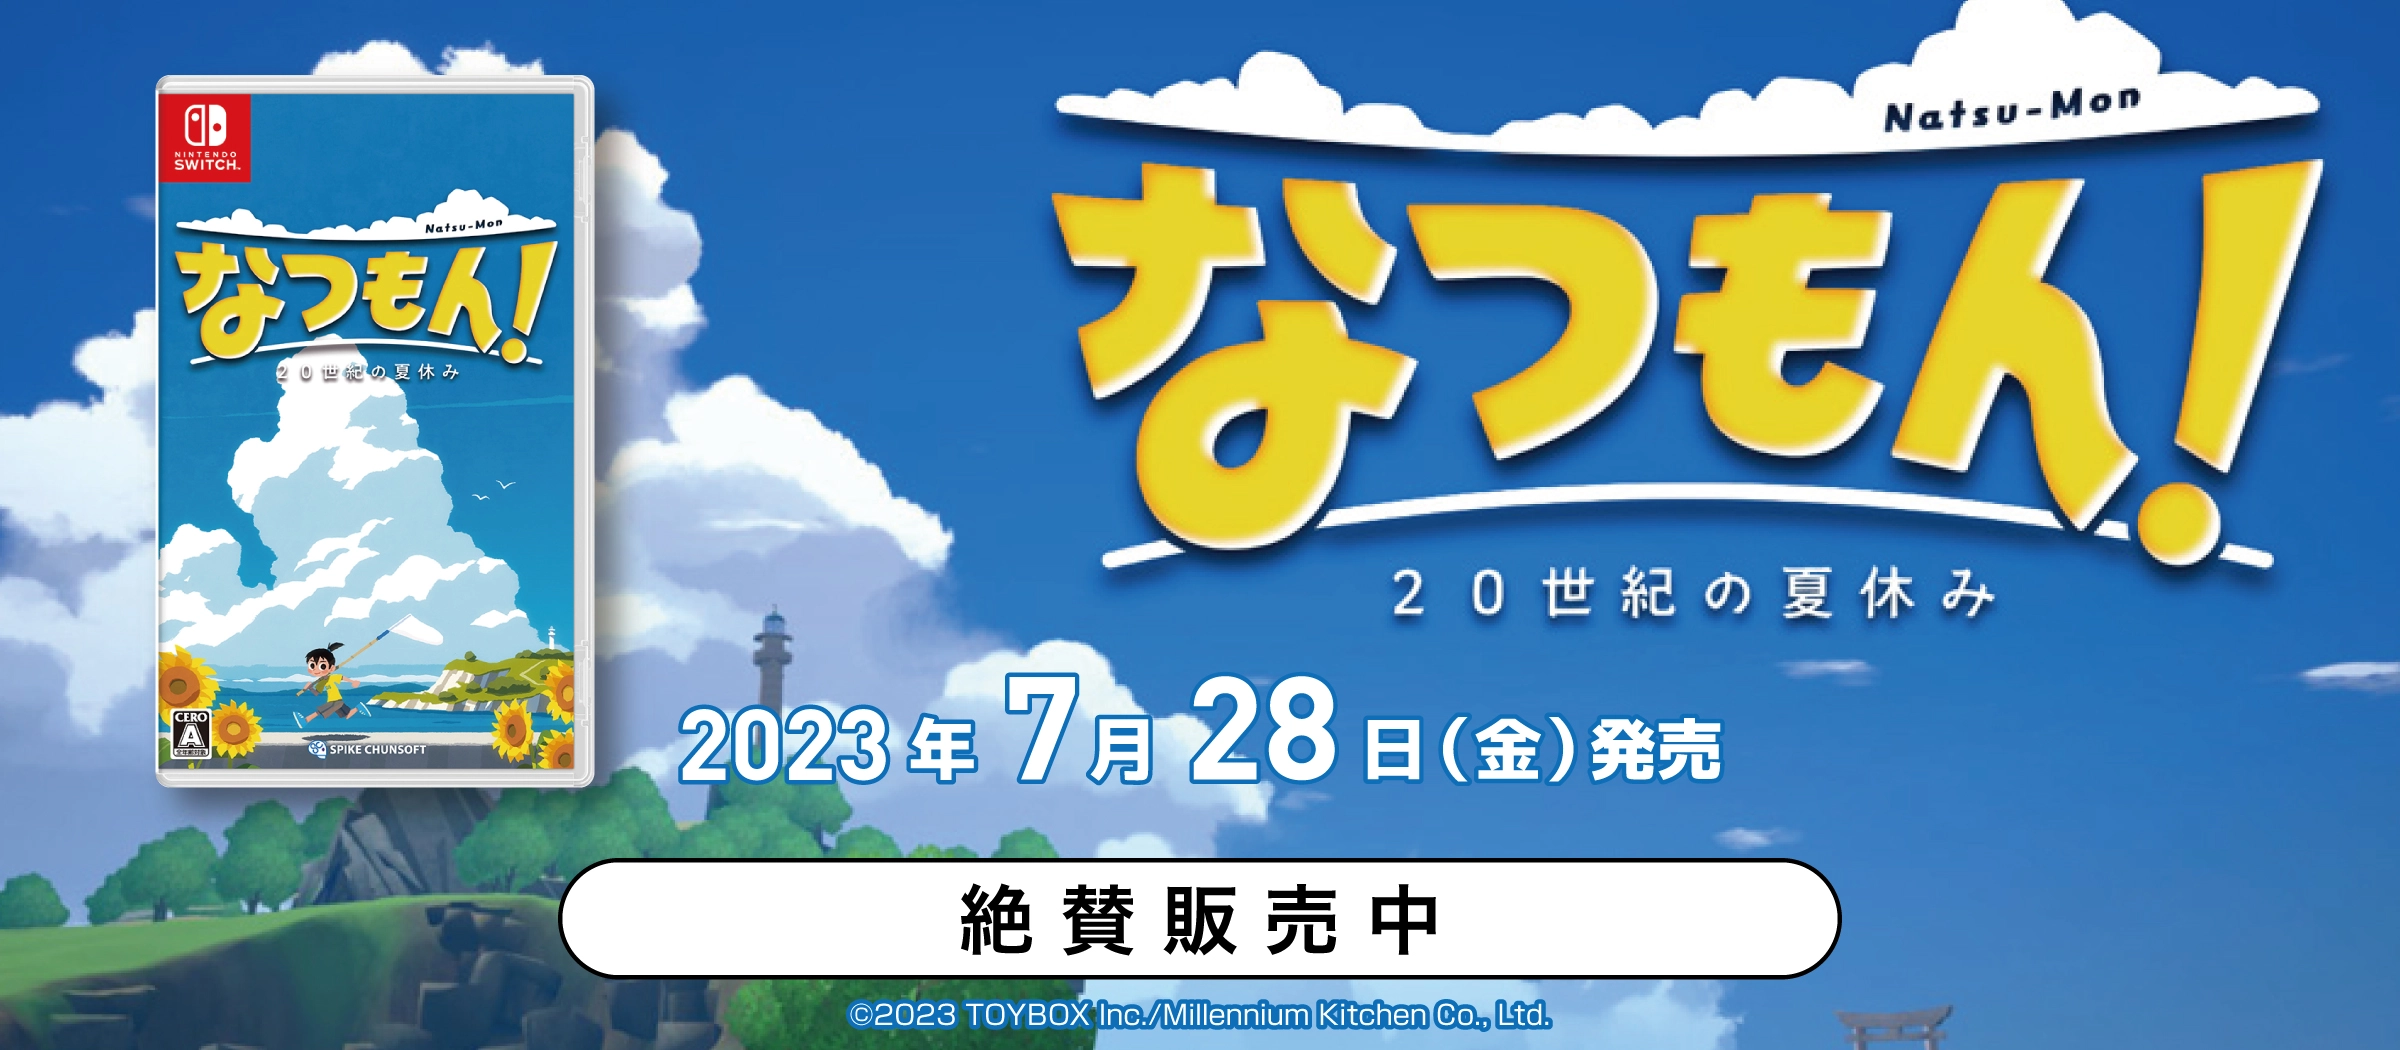 ふるいちオンライン - 【絶賛販売中】Nintendo Switch『なつもん! 20 ...